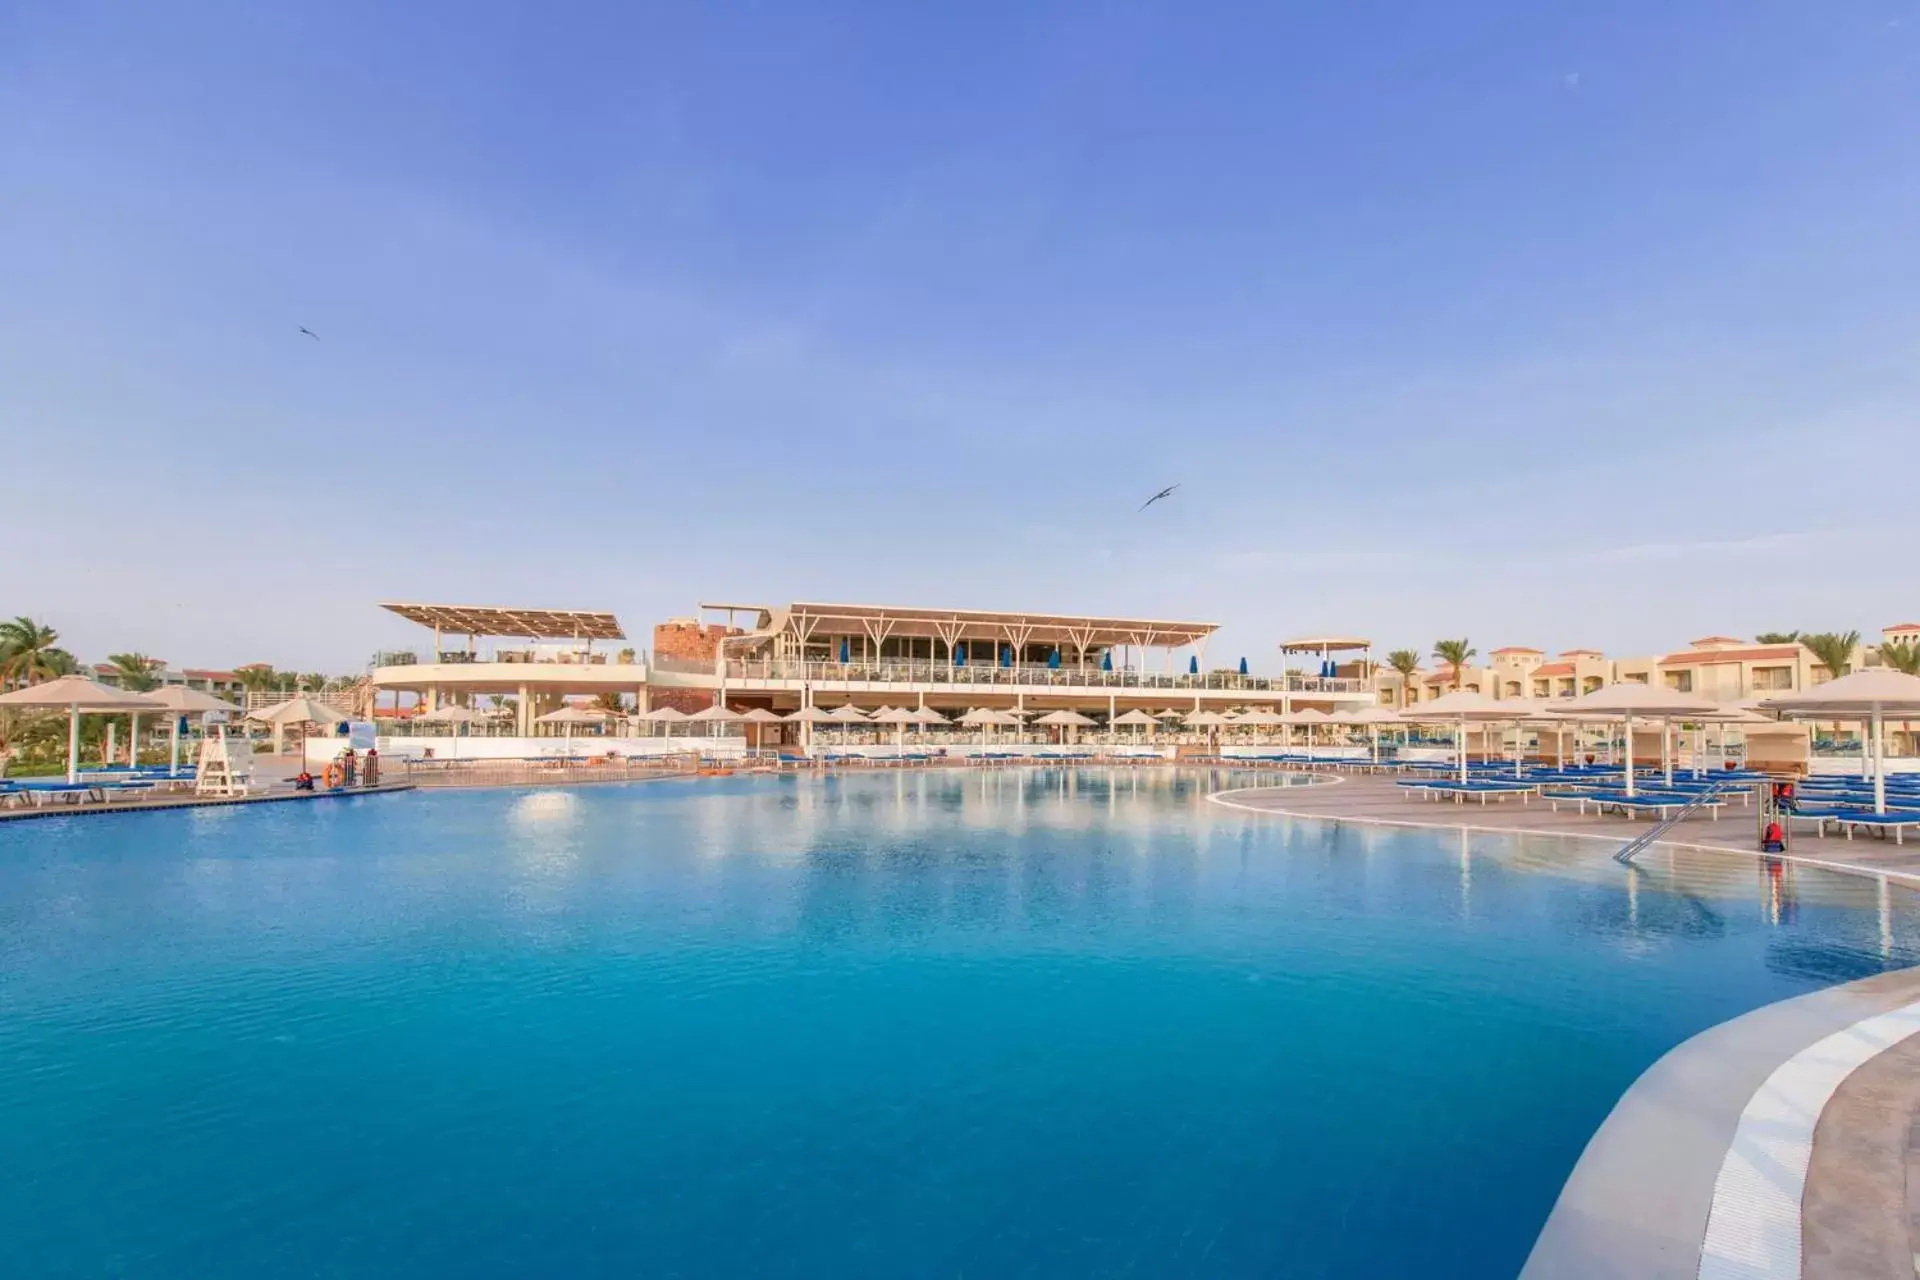 Swimming pool in Pickalbatros Dana Beach Resort - Hurghada